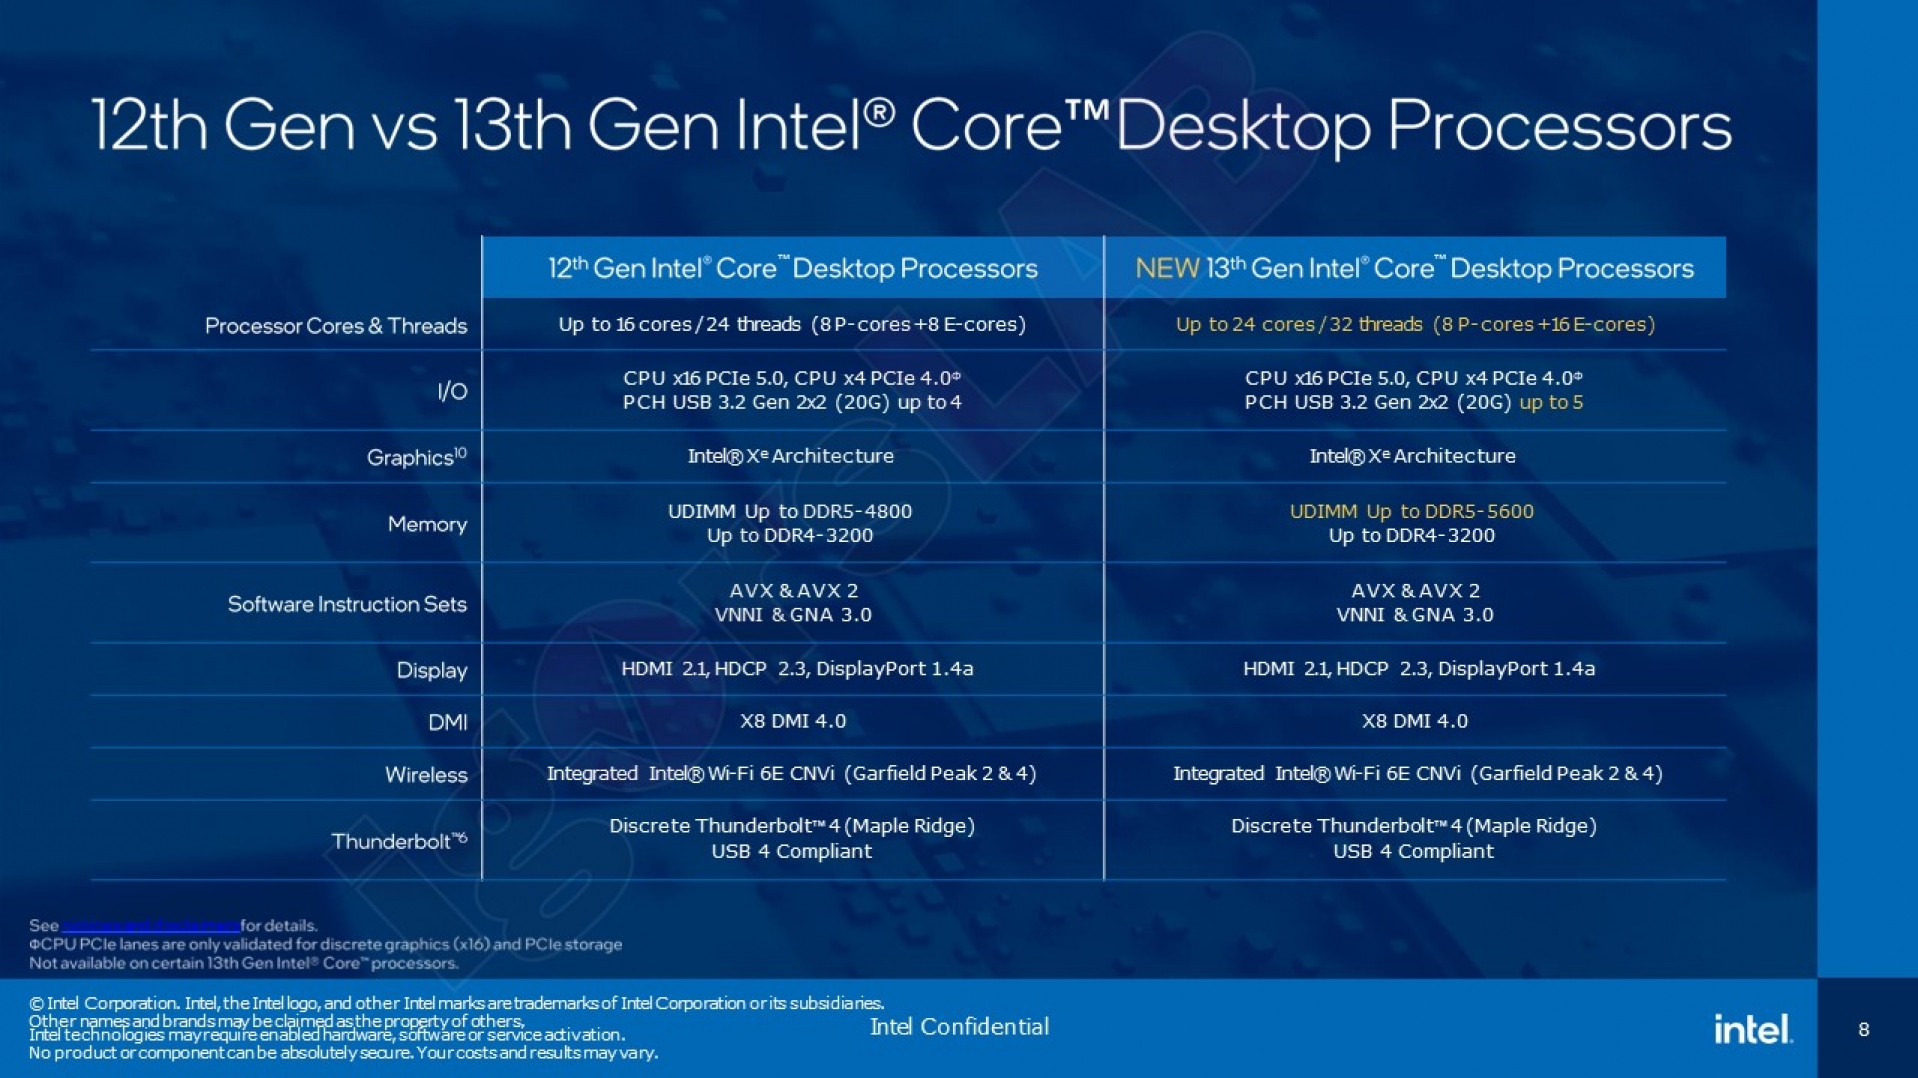 Intel 12th Gen Vs 13th Gen